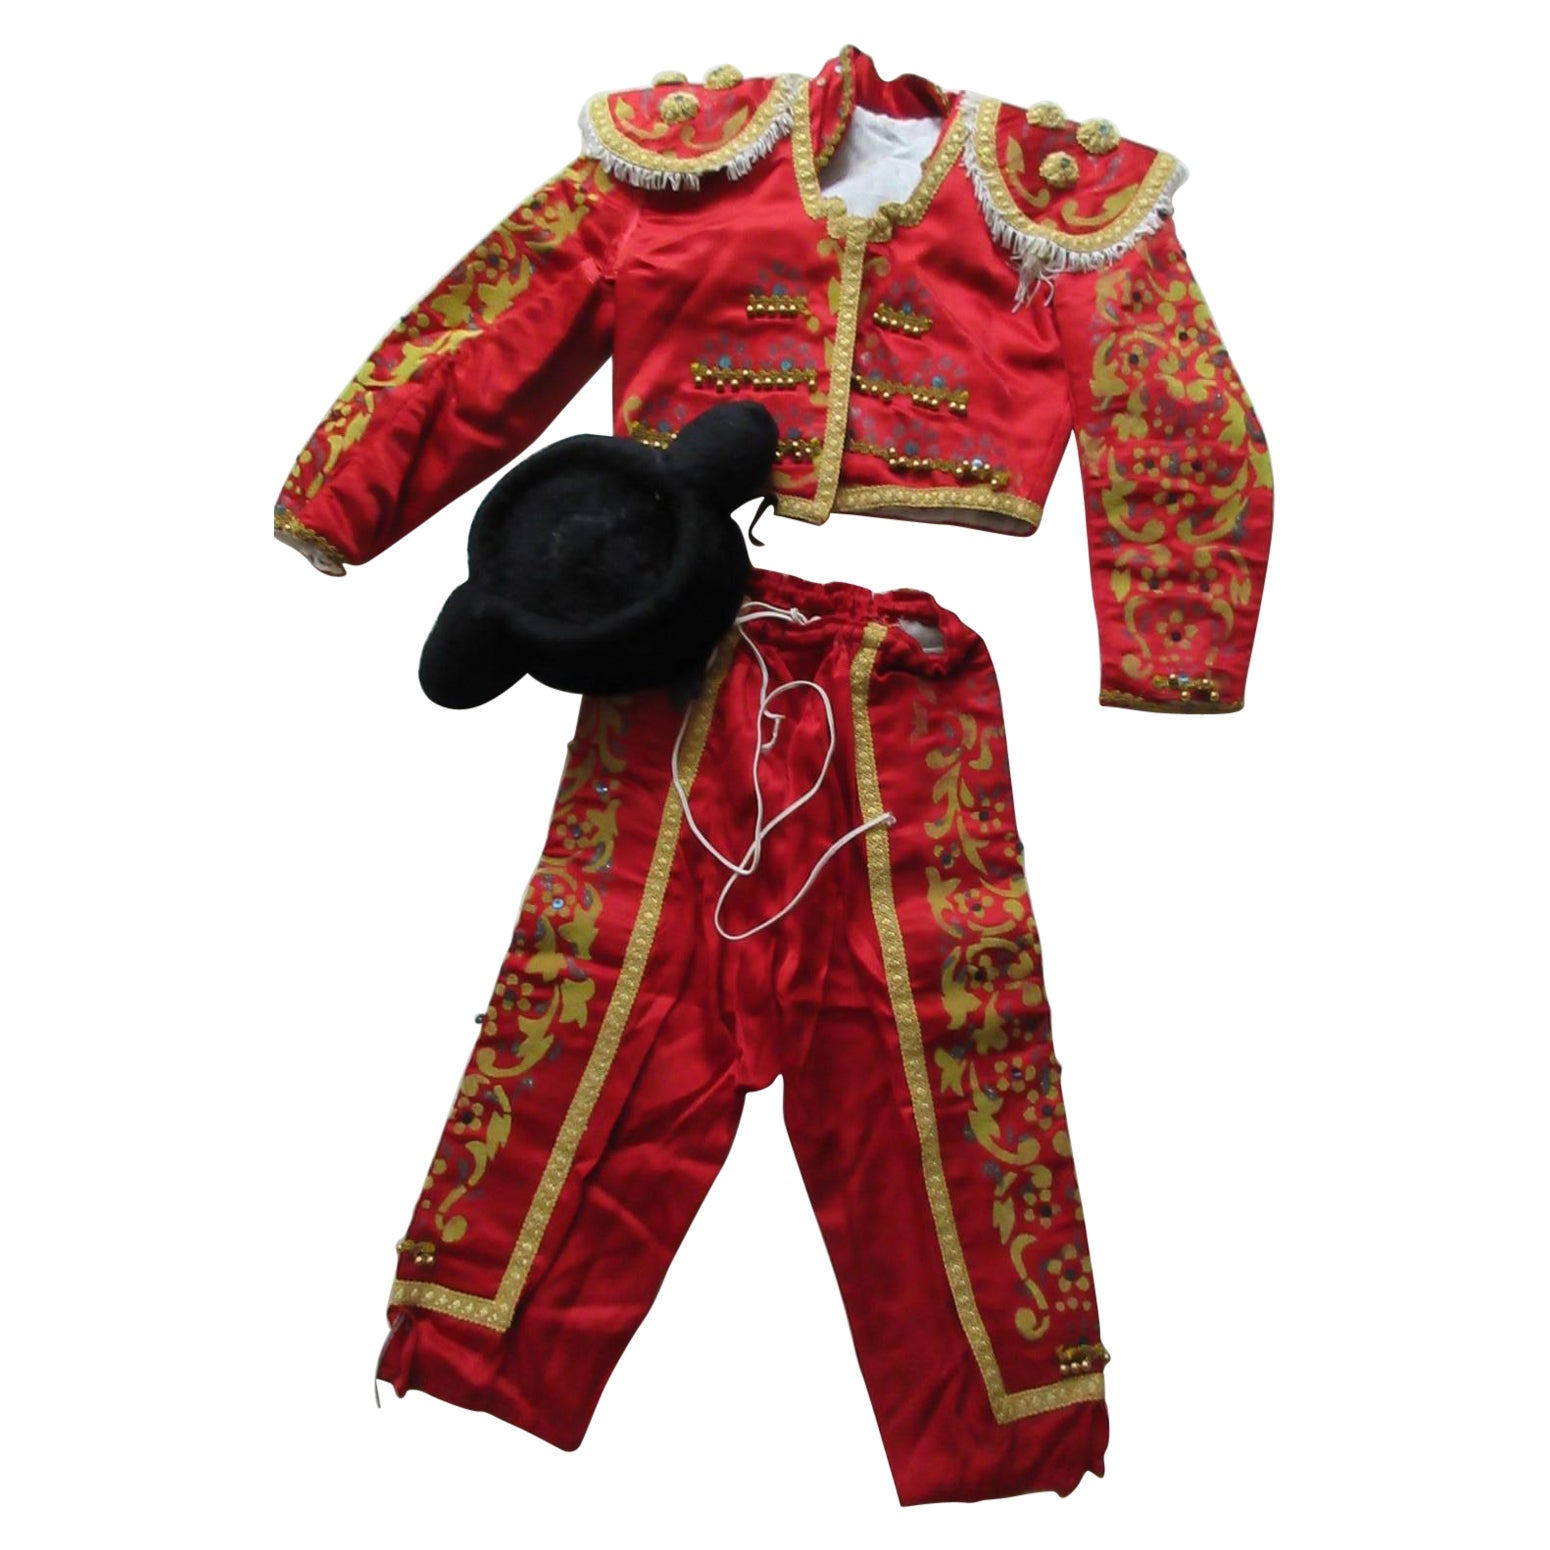 Antique Spanish Matador Costume Children For Sale